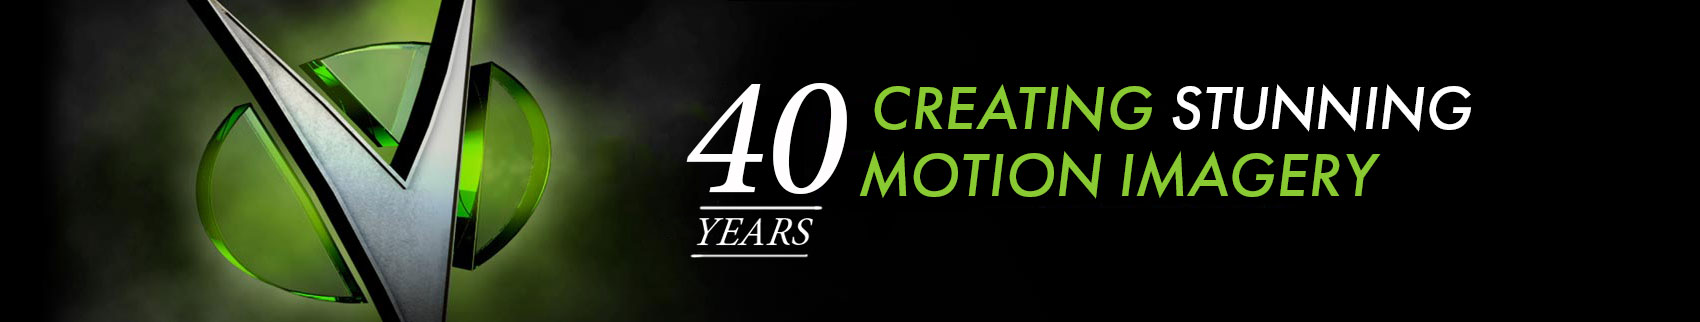 Vidox. 40 Years Creating Stunning Motion Imagery.